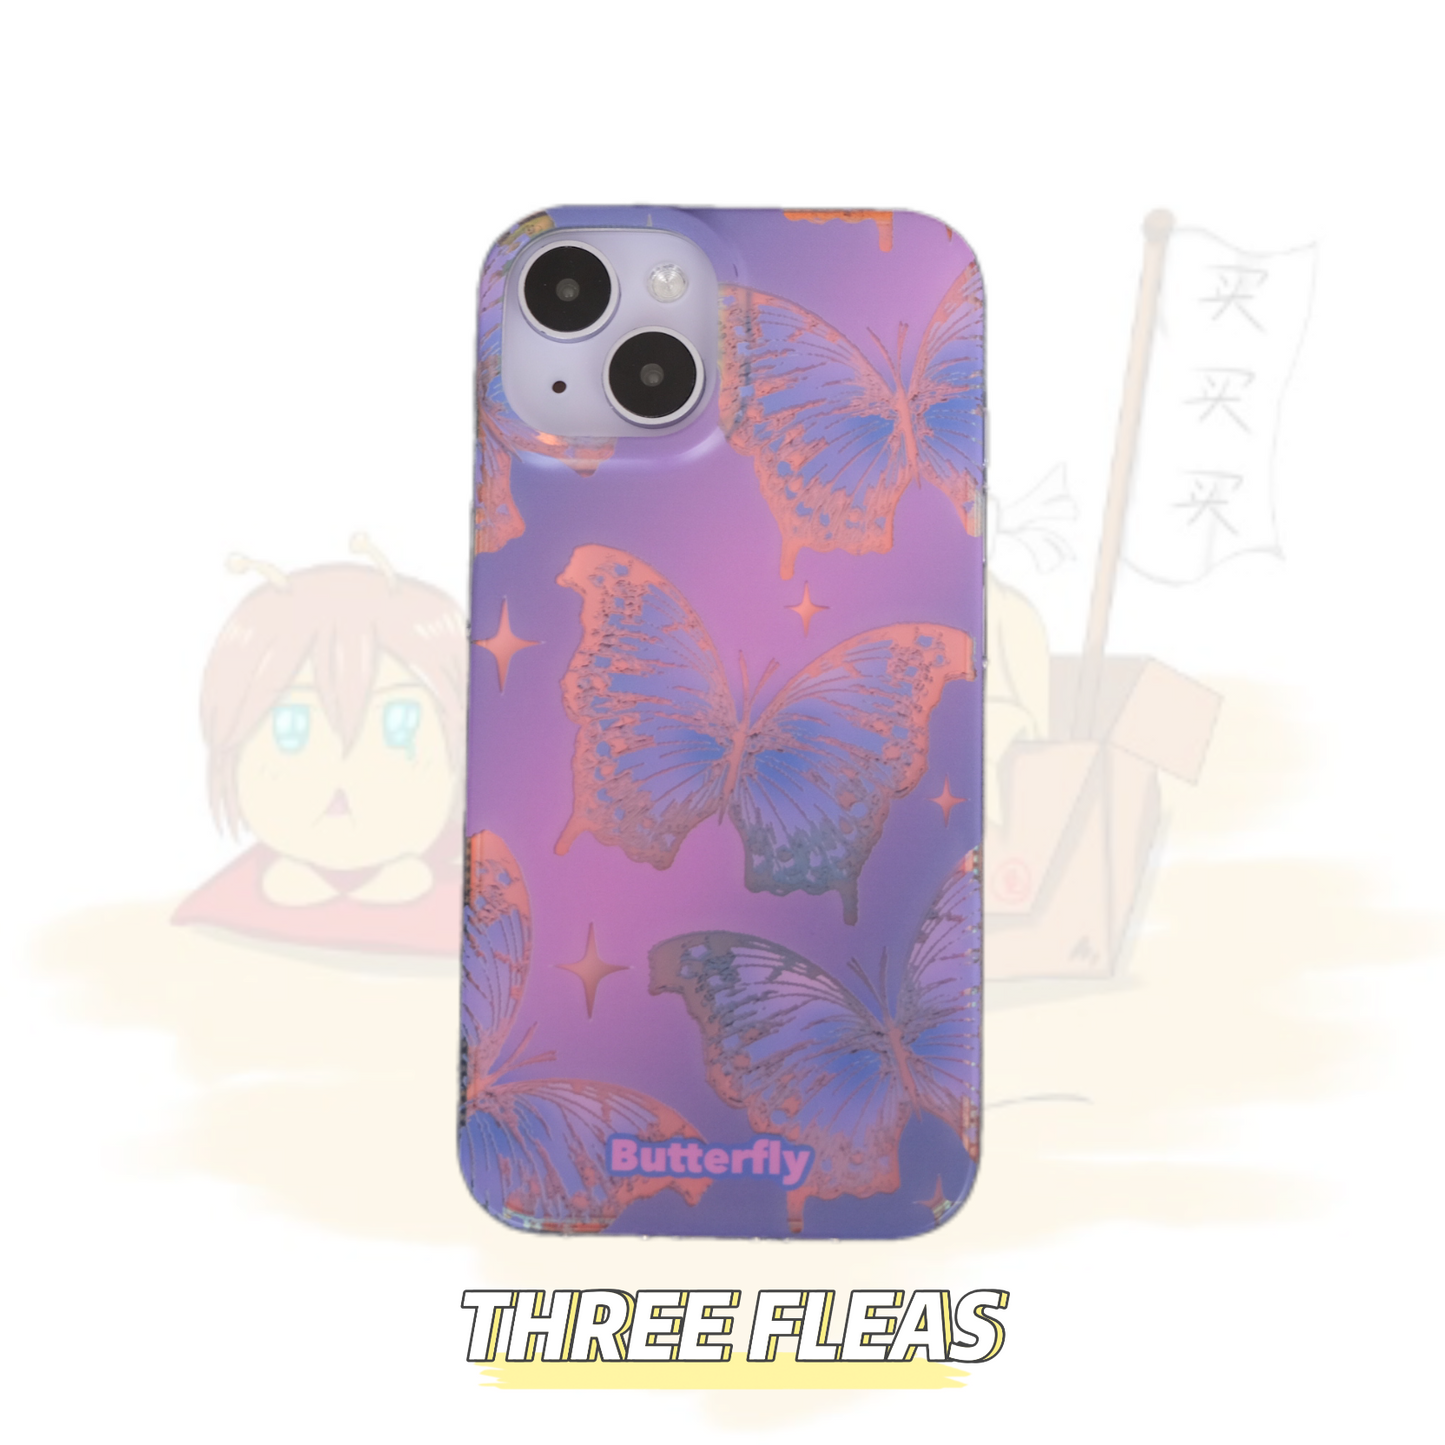 Purple Butterfly Laser Phone Case